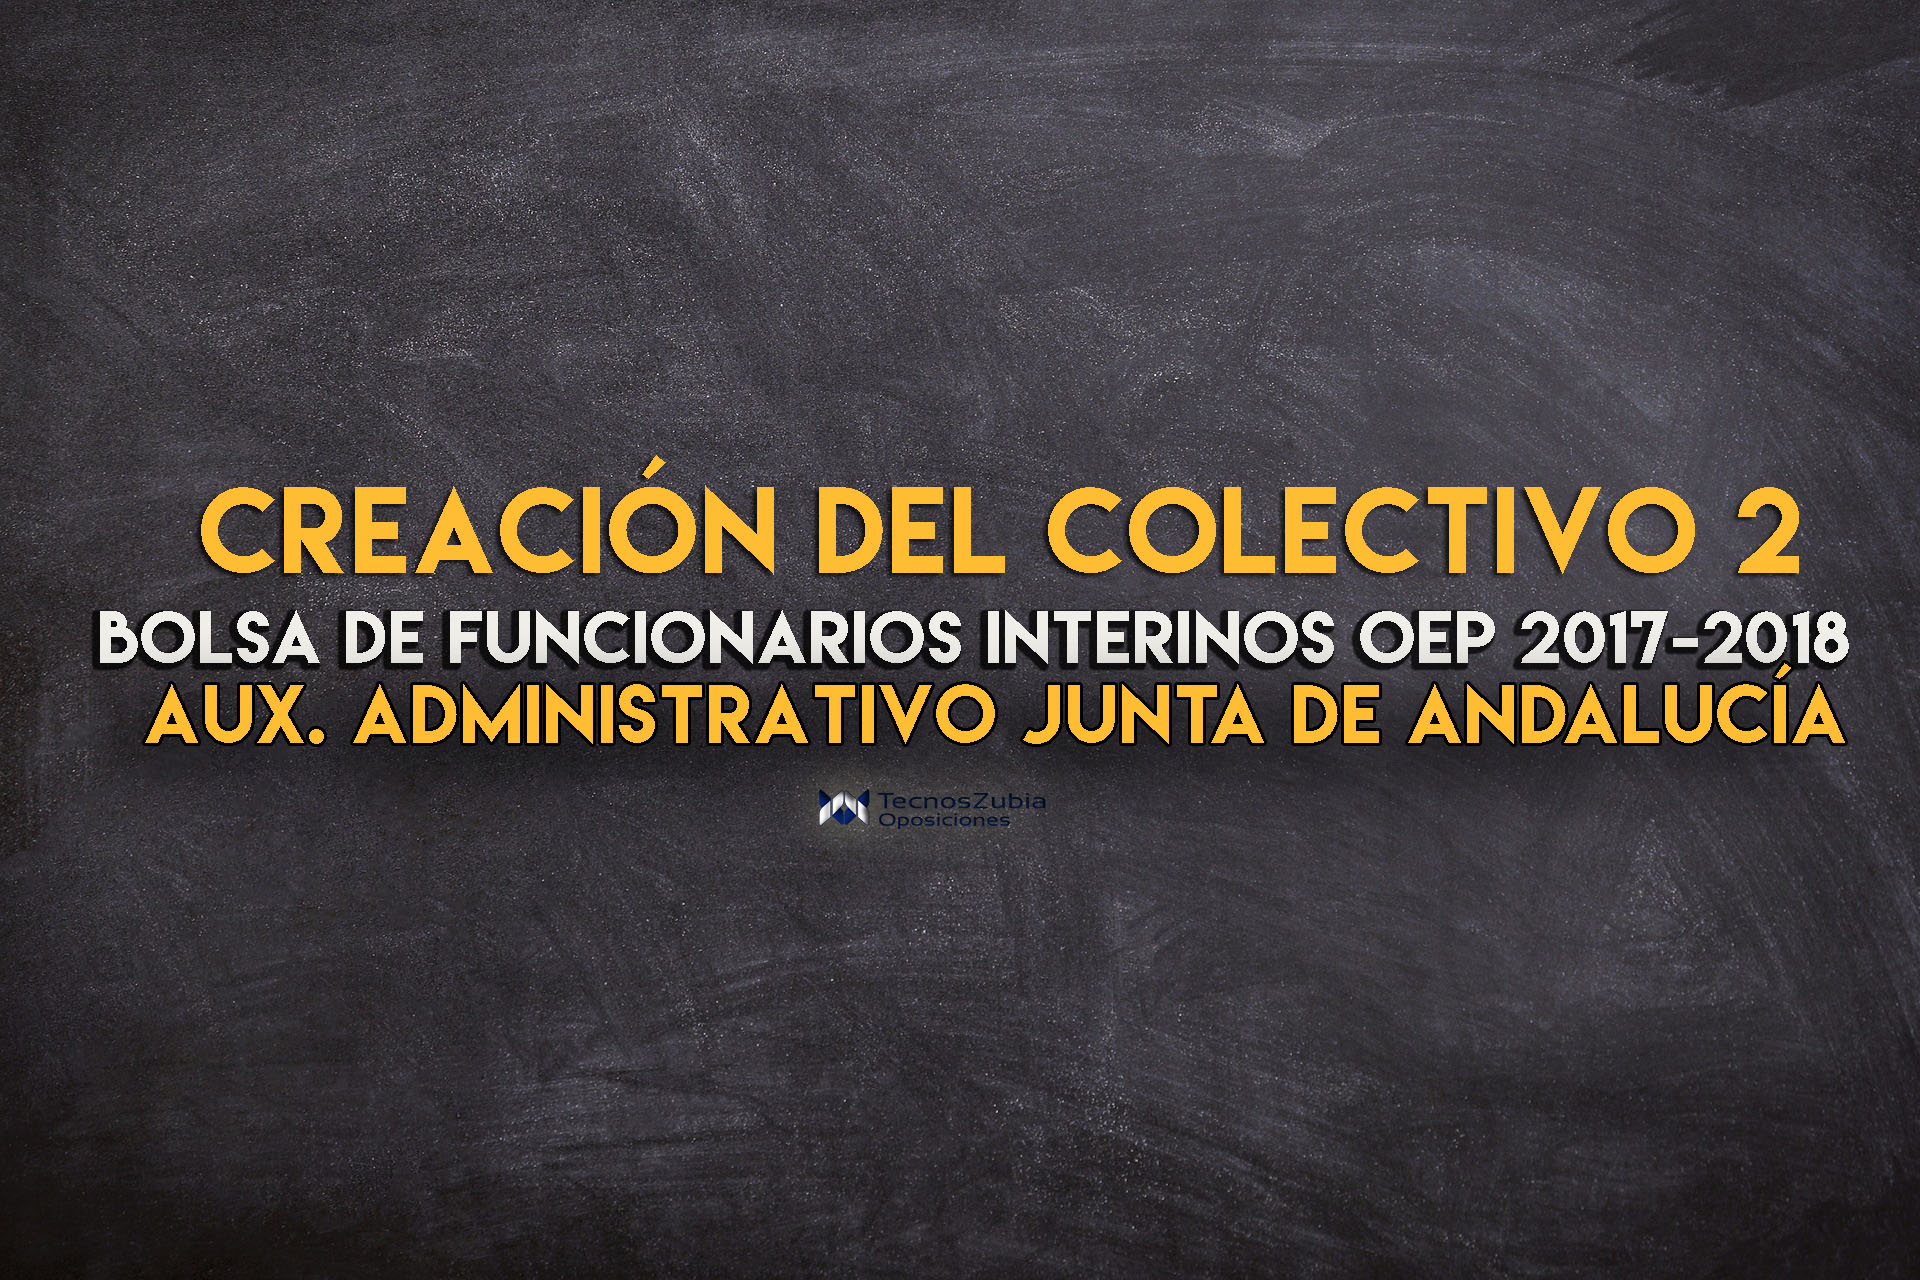 Auxiliar Administrativo de Andalucía: Creación del colectivo 2 en la de Funcionarios Interinos OEP - TecnosZubia